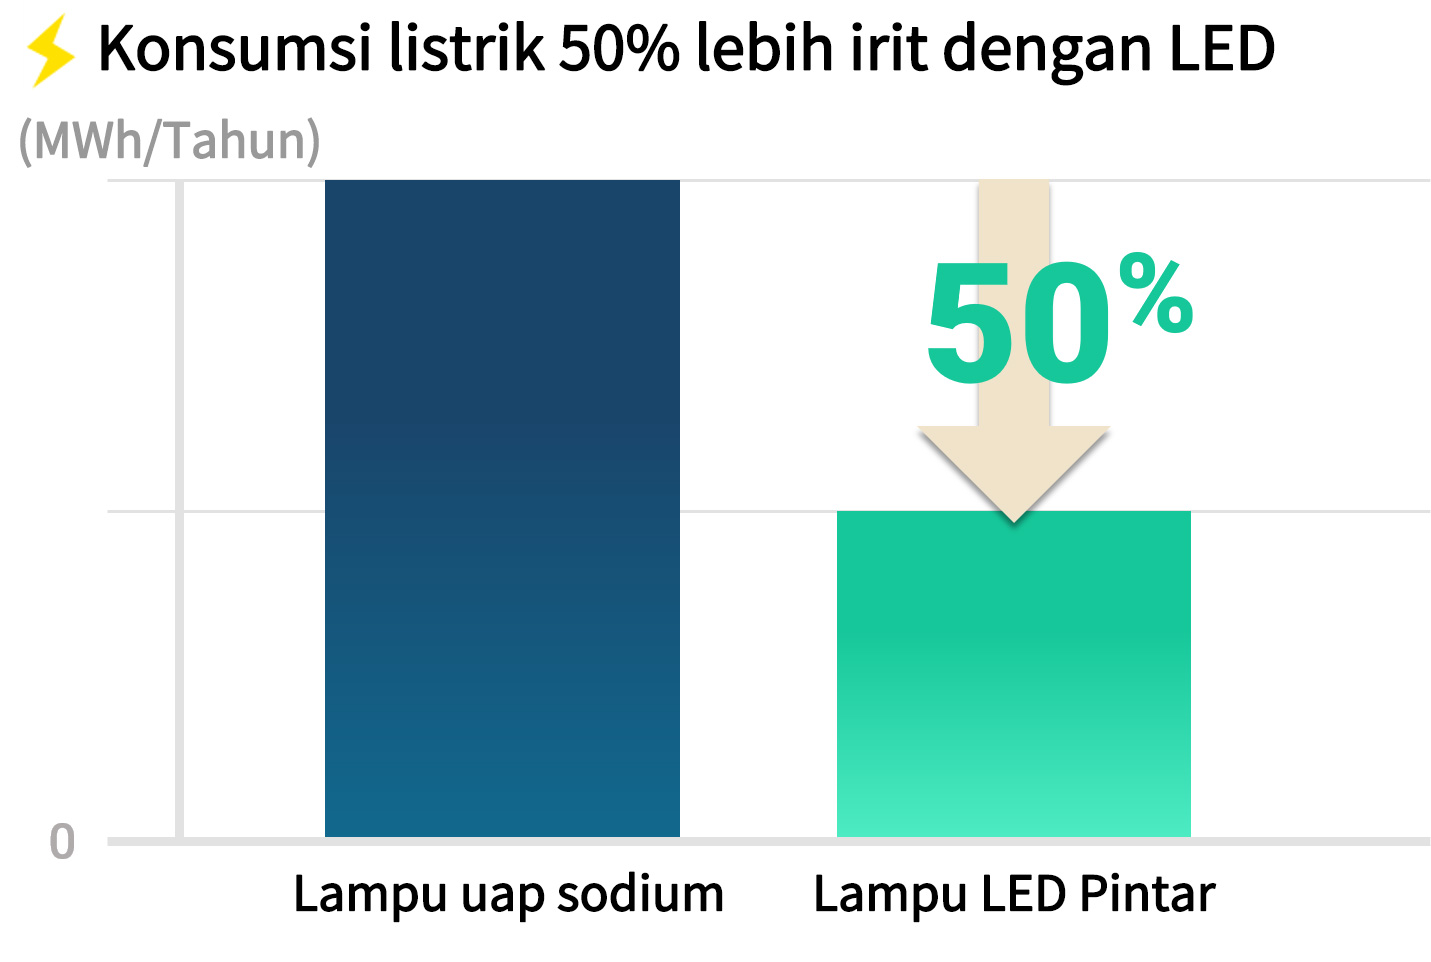 Konsumsi listrik 50% lebih irit dengan LED